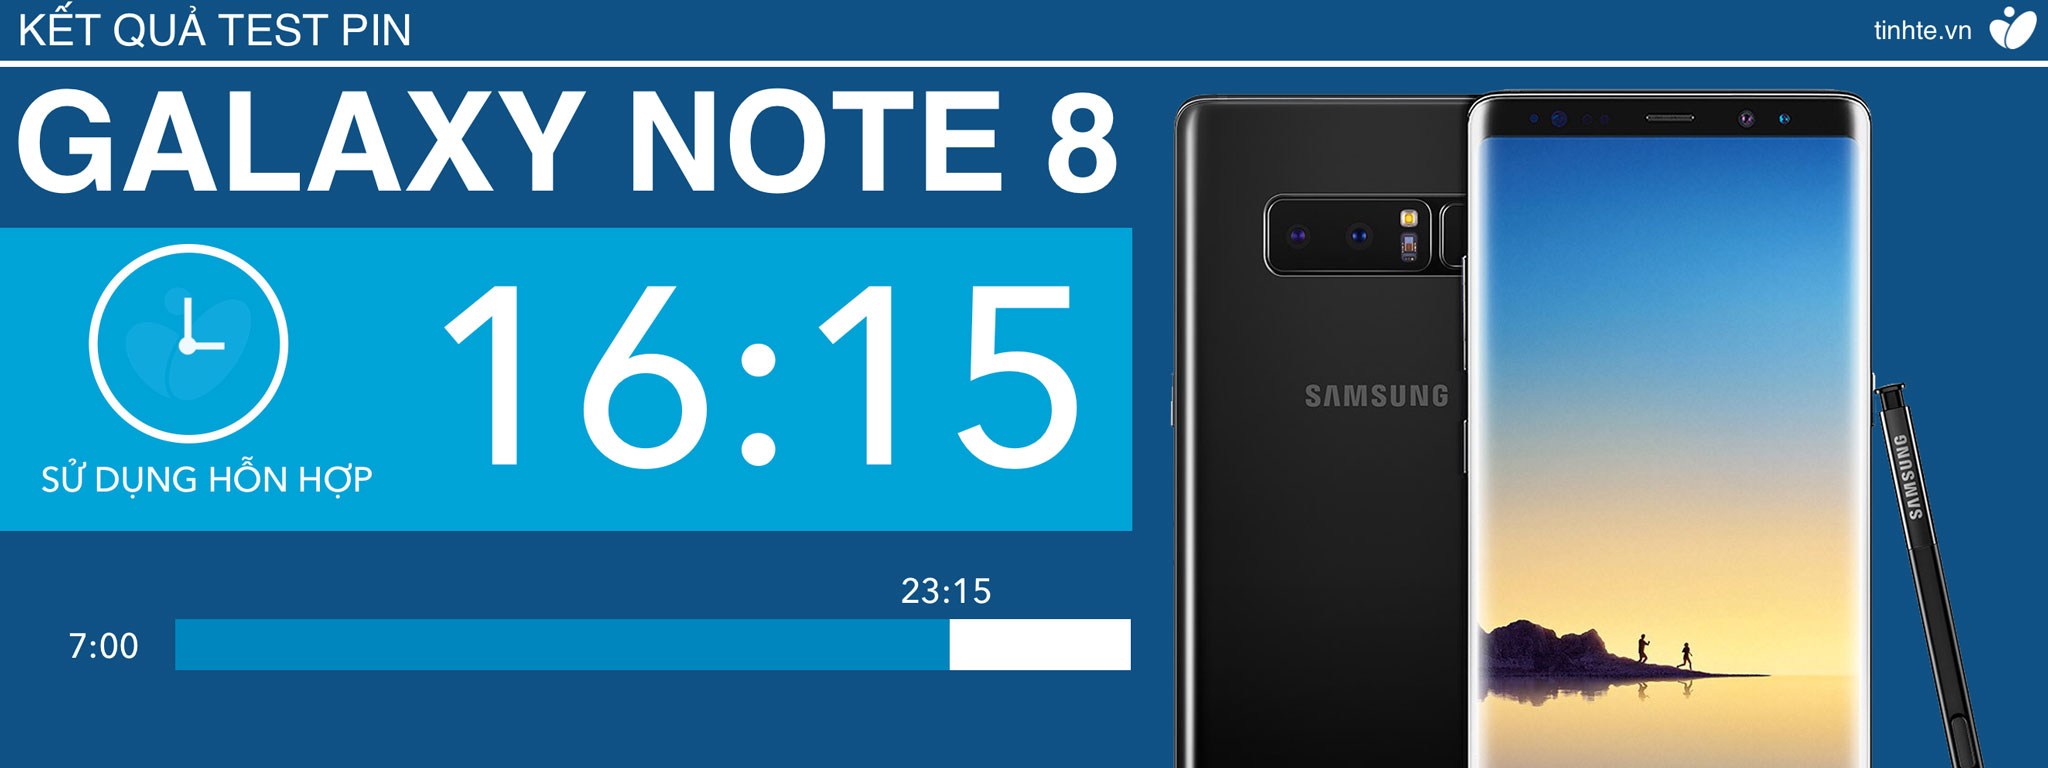 Đánh giá pin Samsung Galaxy Note 8: on screen 6 tiếng rưỡi, đủ cho nhu cầu sử dụng bình thường